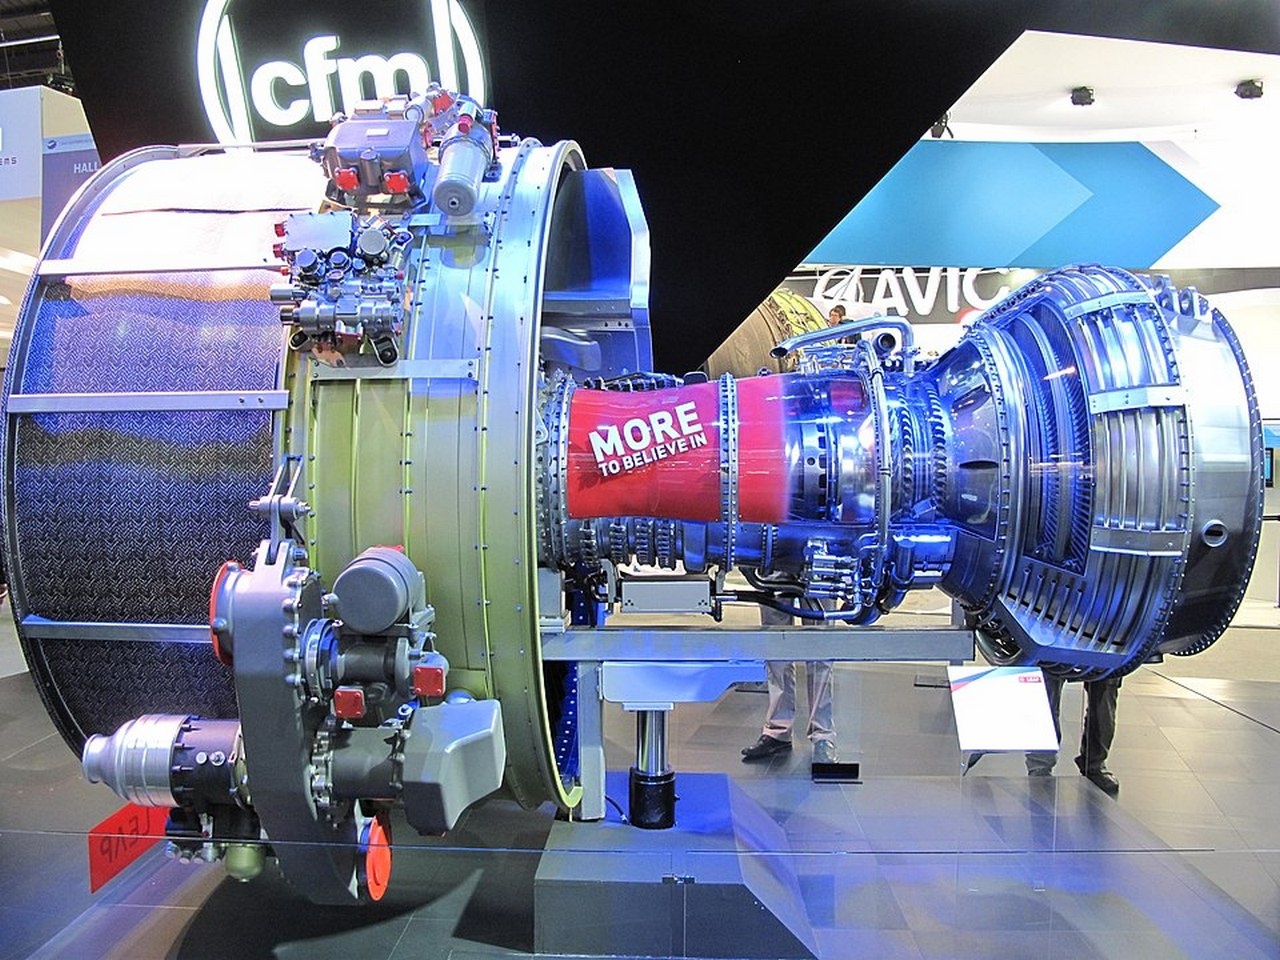 Турбовентиляторный двигатель CFM International LEAP, установленный на Boeing 737 MAX.